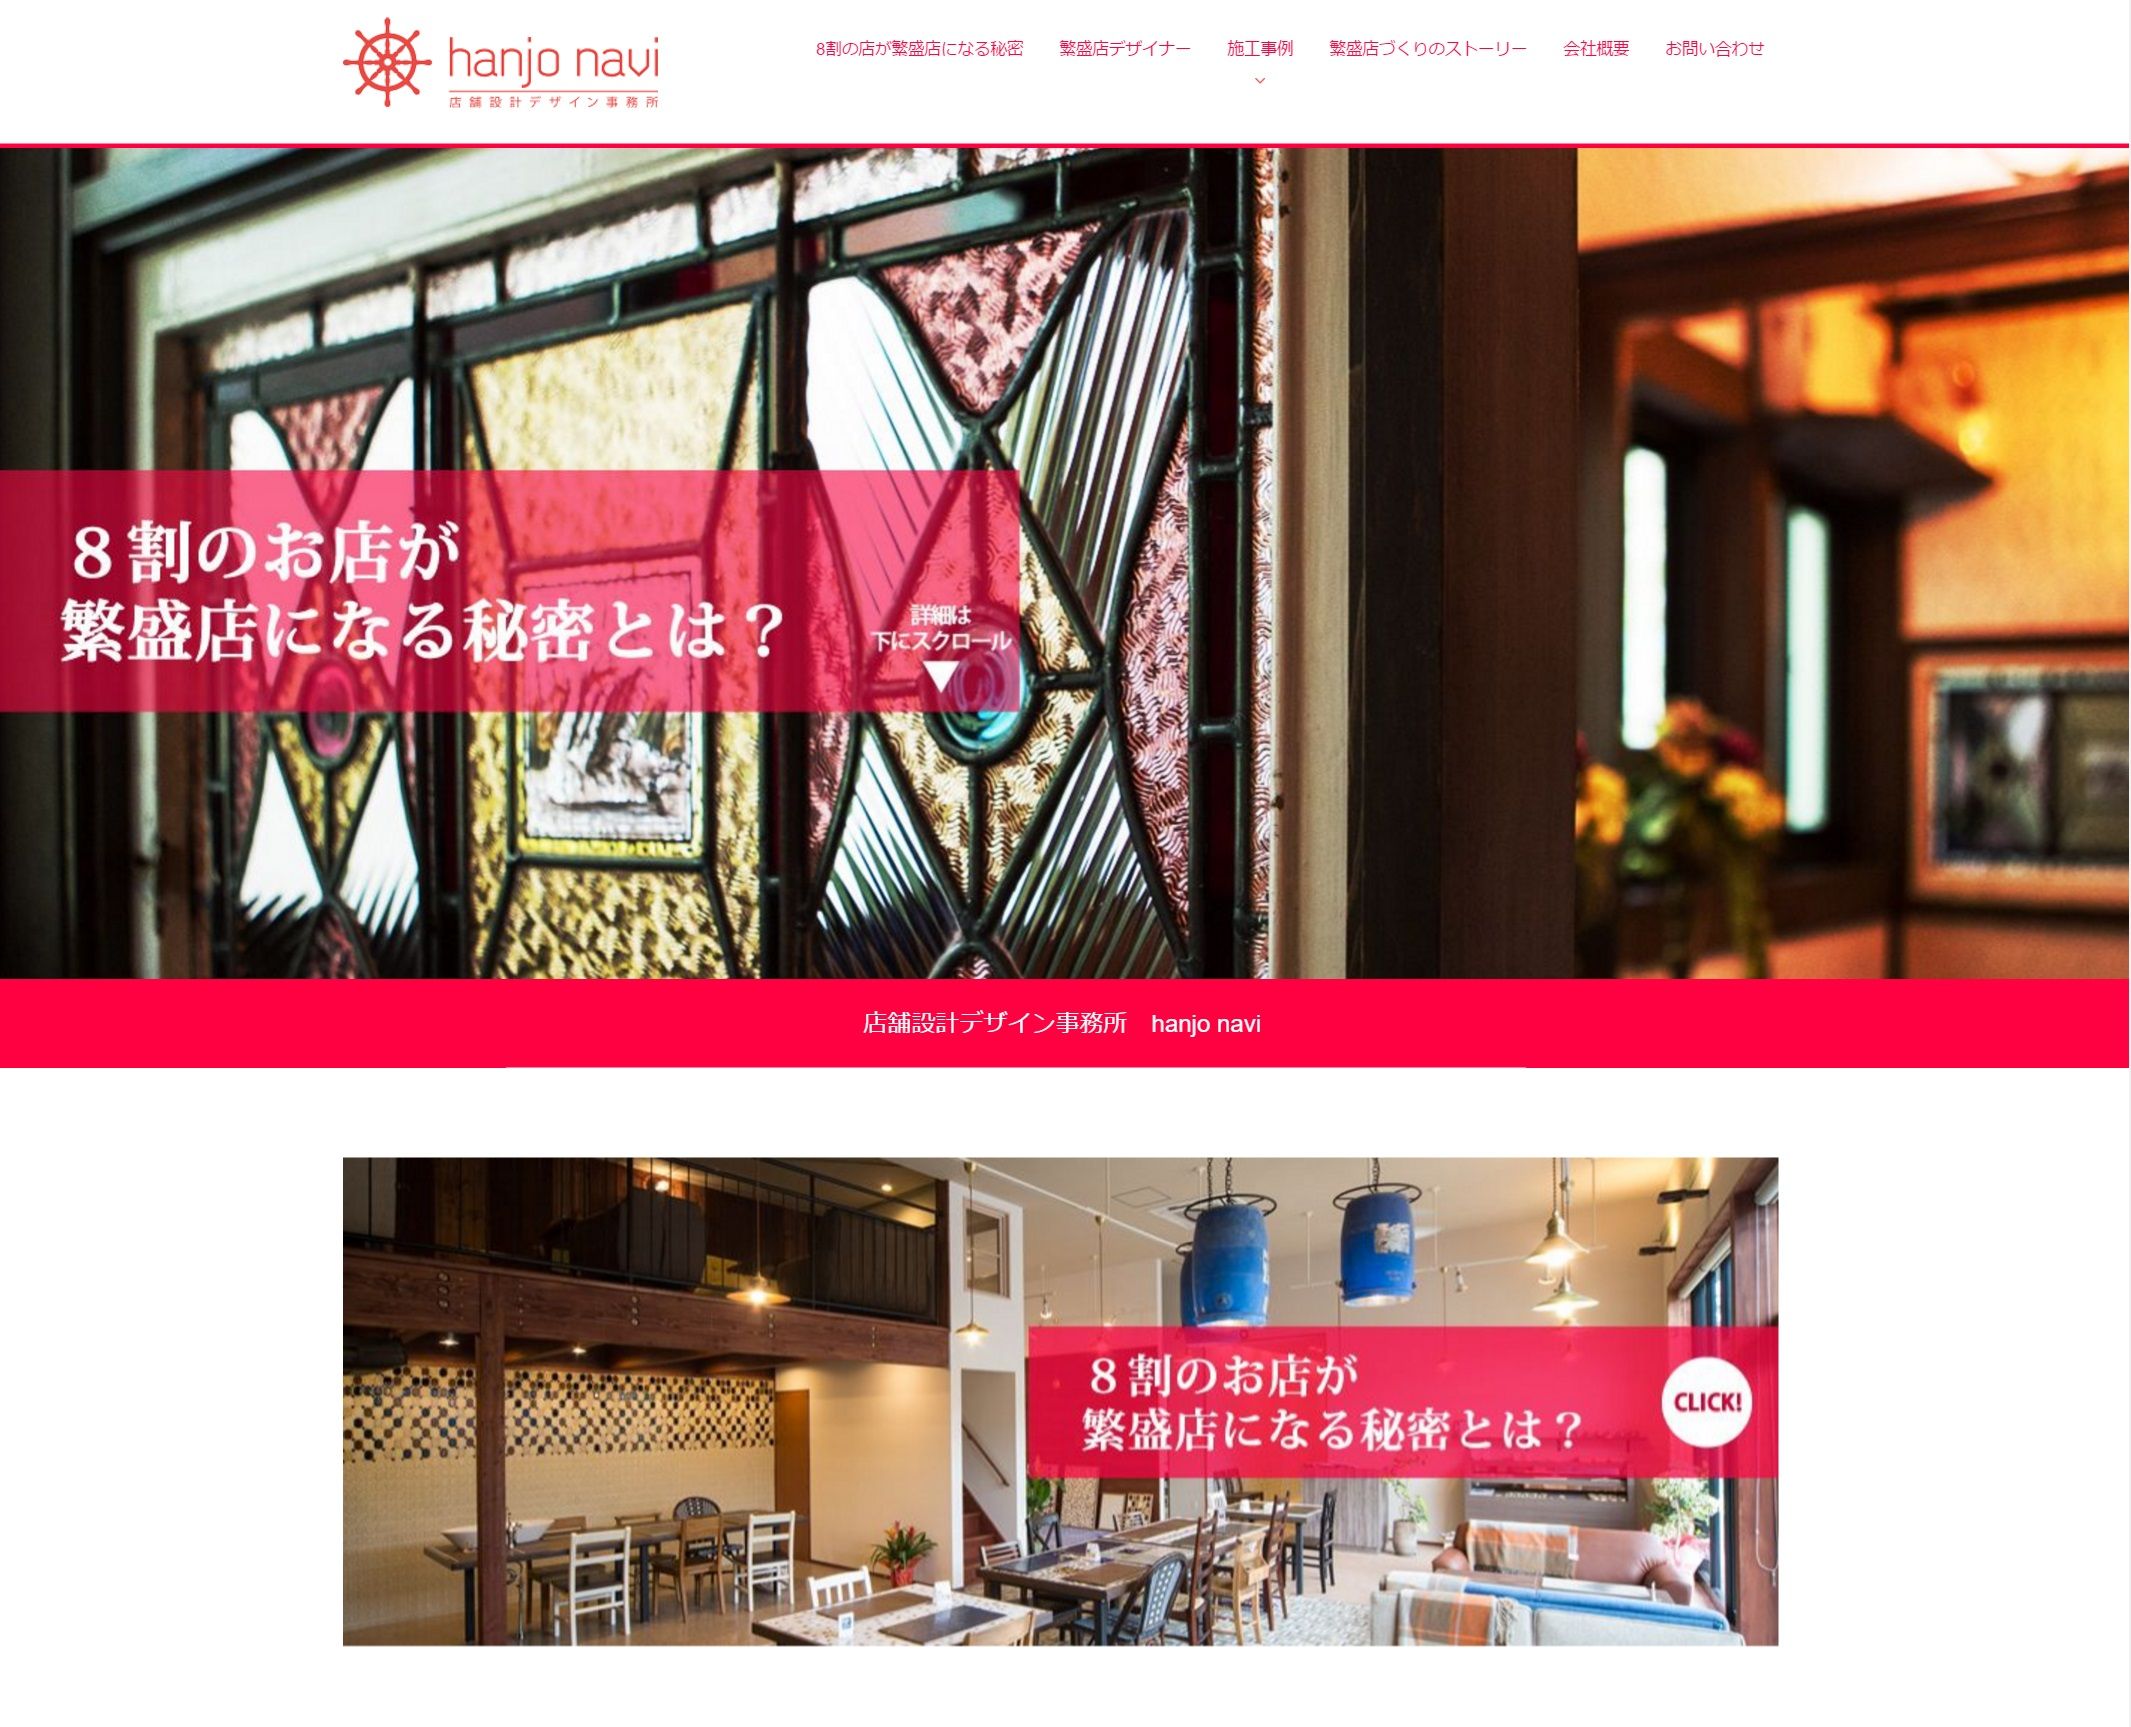 店舗デザインに特化した新サービス【hanjo navi】ウェブサイトを公開しました。